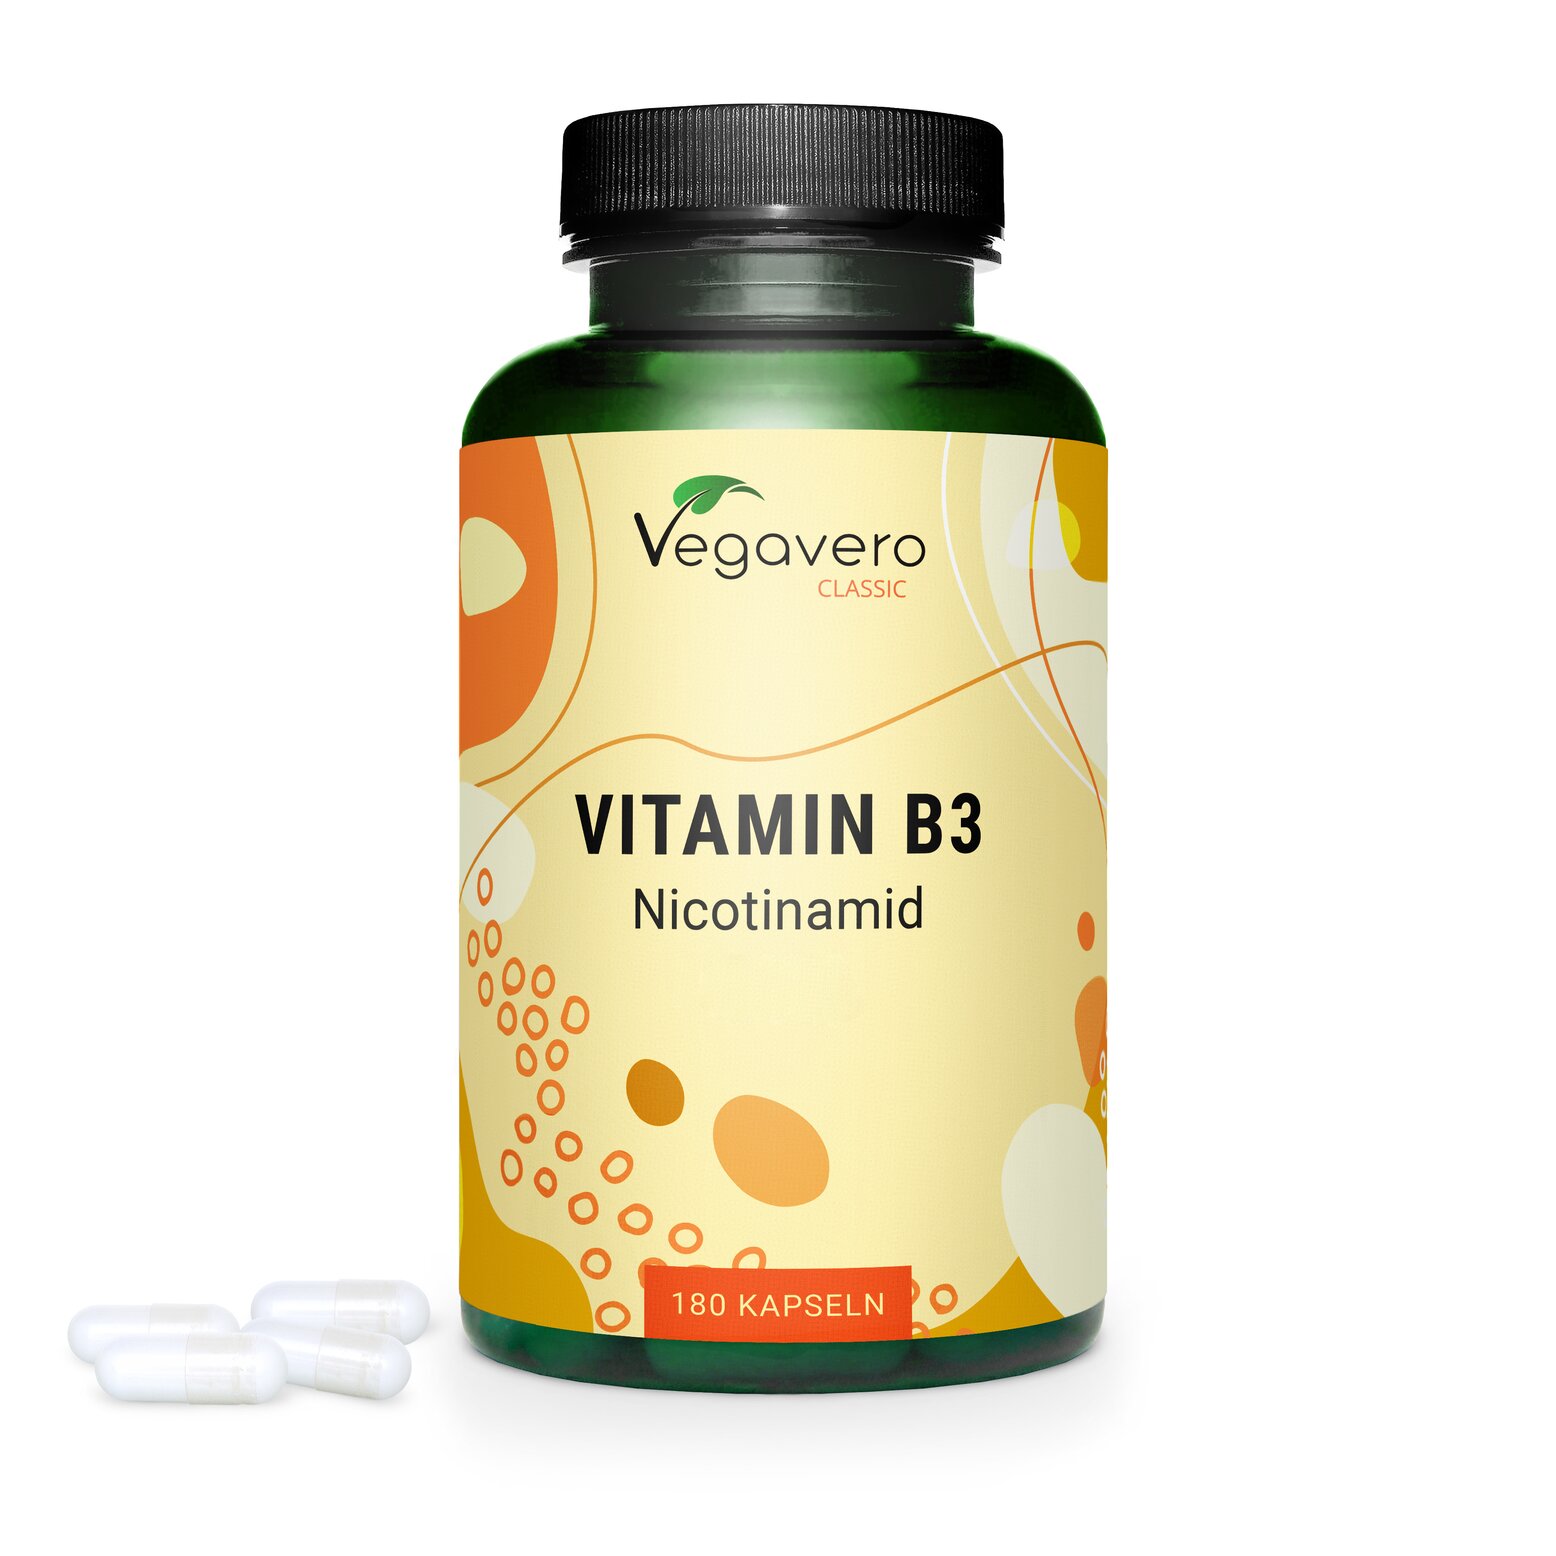 Vegavero Vitamin B3 Niacin | 180 Kapseln | 500 mg Nicotinamid | vegan